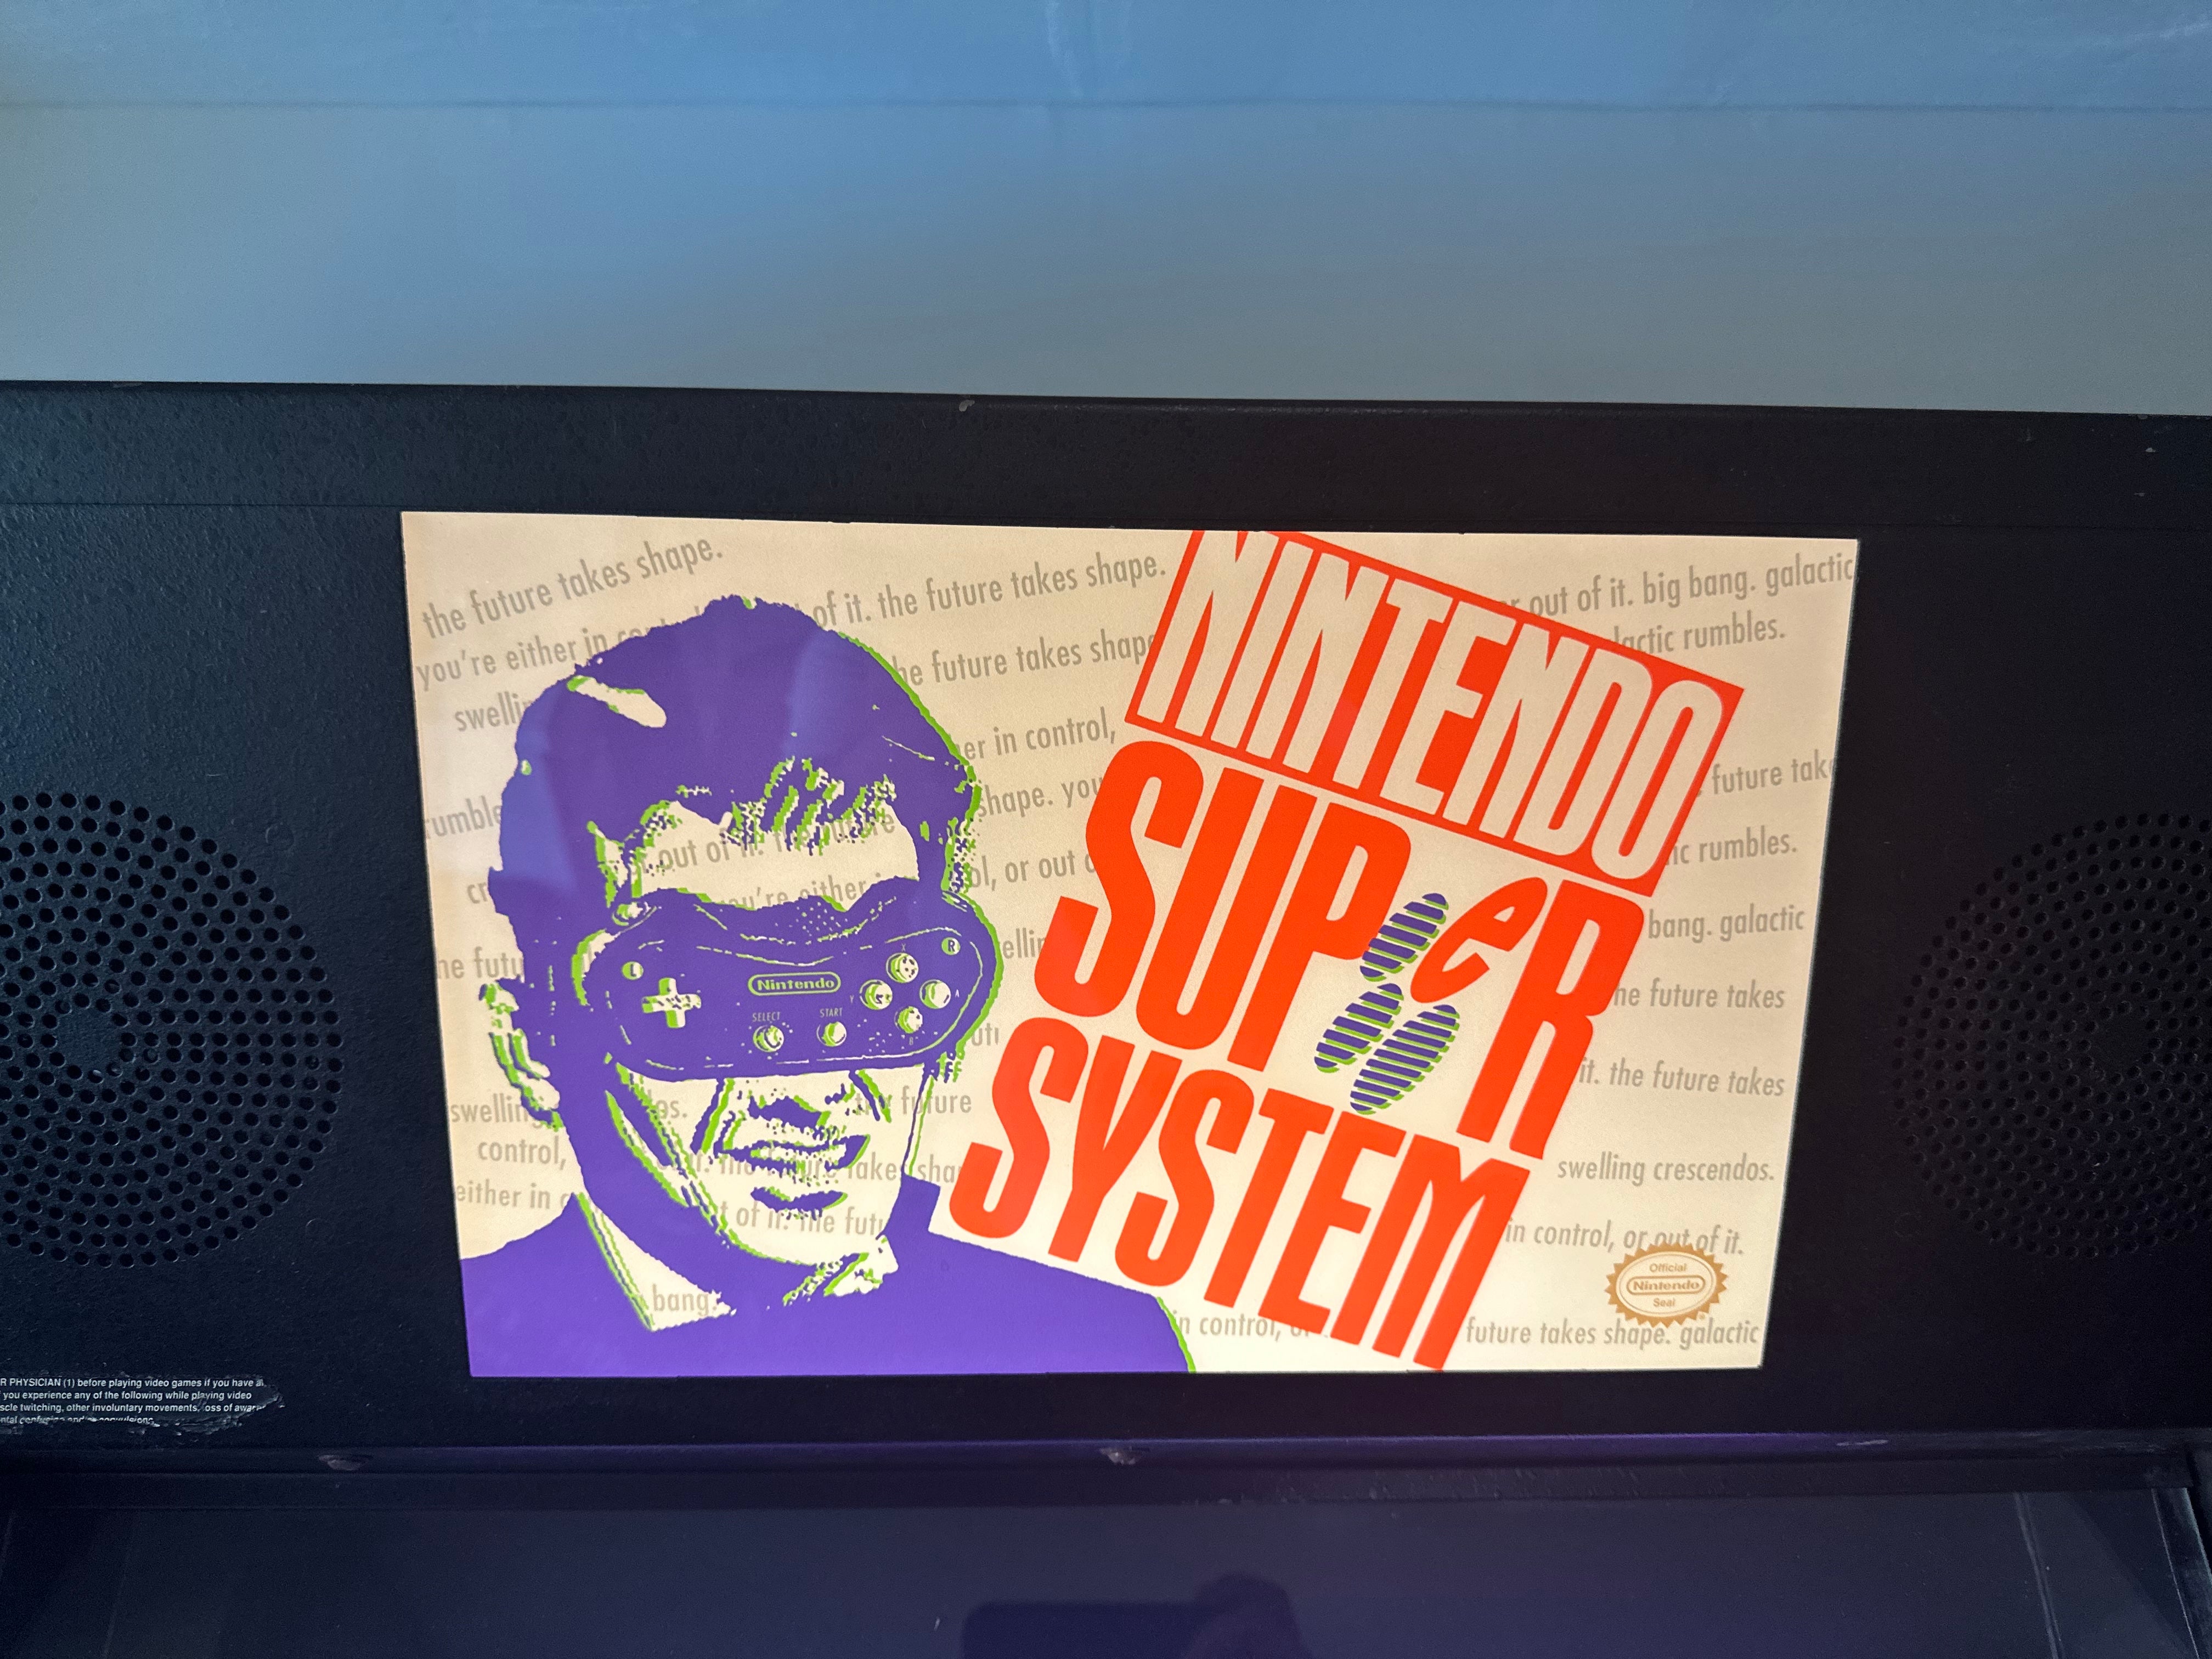 Carpa para Nintendo Super System